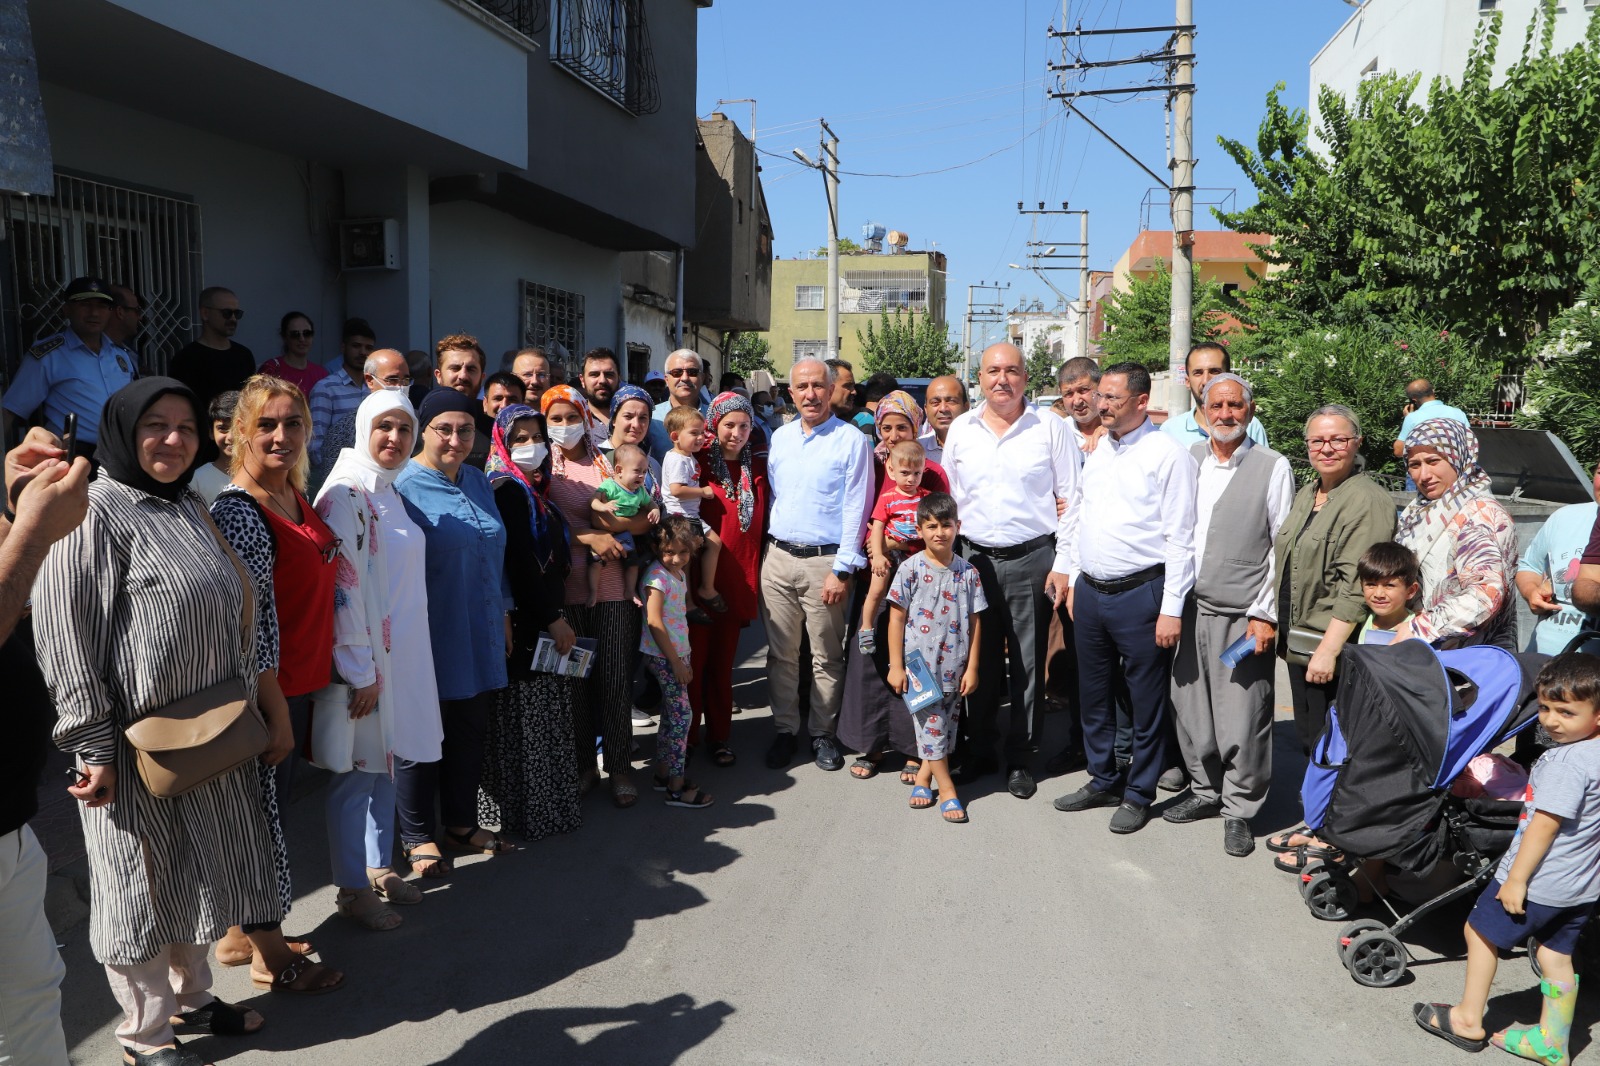 Akdeniz Belediye Başkanı, 6-7 mahallede daha projeyi uygulamak istediklerini belirtti GÜLTAK; “AKDENİZ’İN KURTULUŞU KENTSEL DÖNÜŞÜMLE MÜMKÜN”